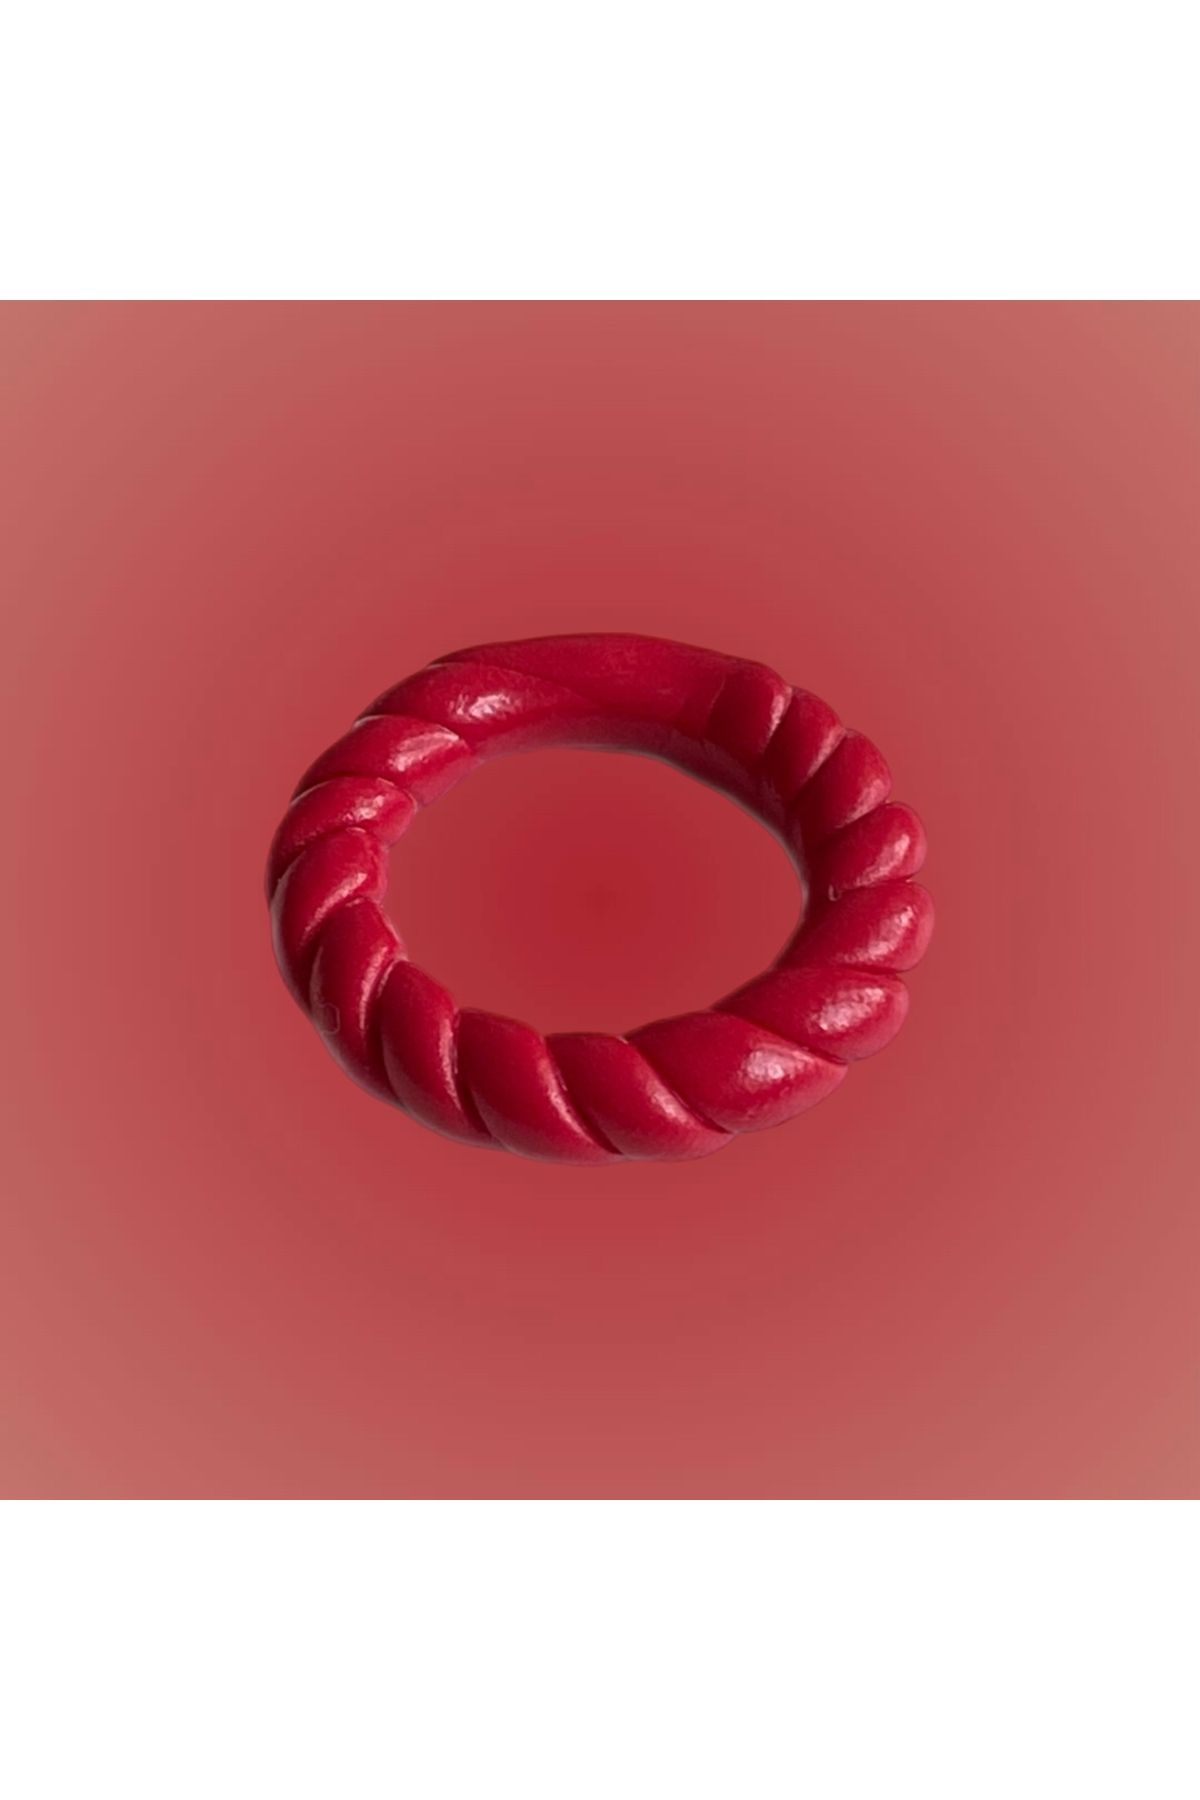 Charmzy Handmade Swirl Clay Ring Thin El Yapımı Polimer Kil Yüzük